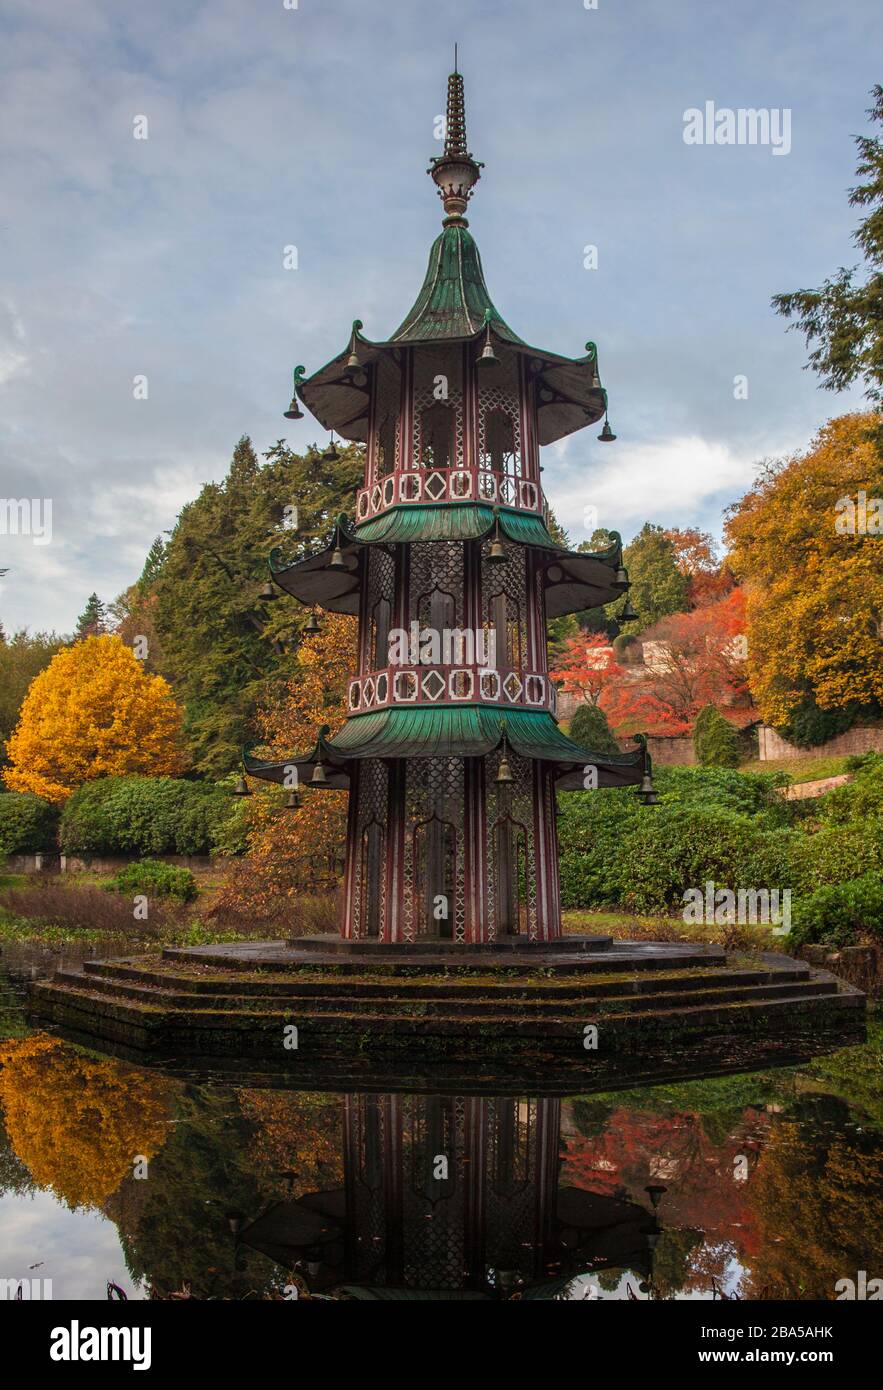 Pagode im Herbst, Herbst oder Herbst Farben. Alton Towers.Estate Gärten, Teich, Reflexionen, öffentliche Gärten Stockfoto